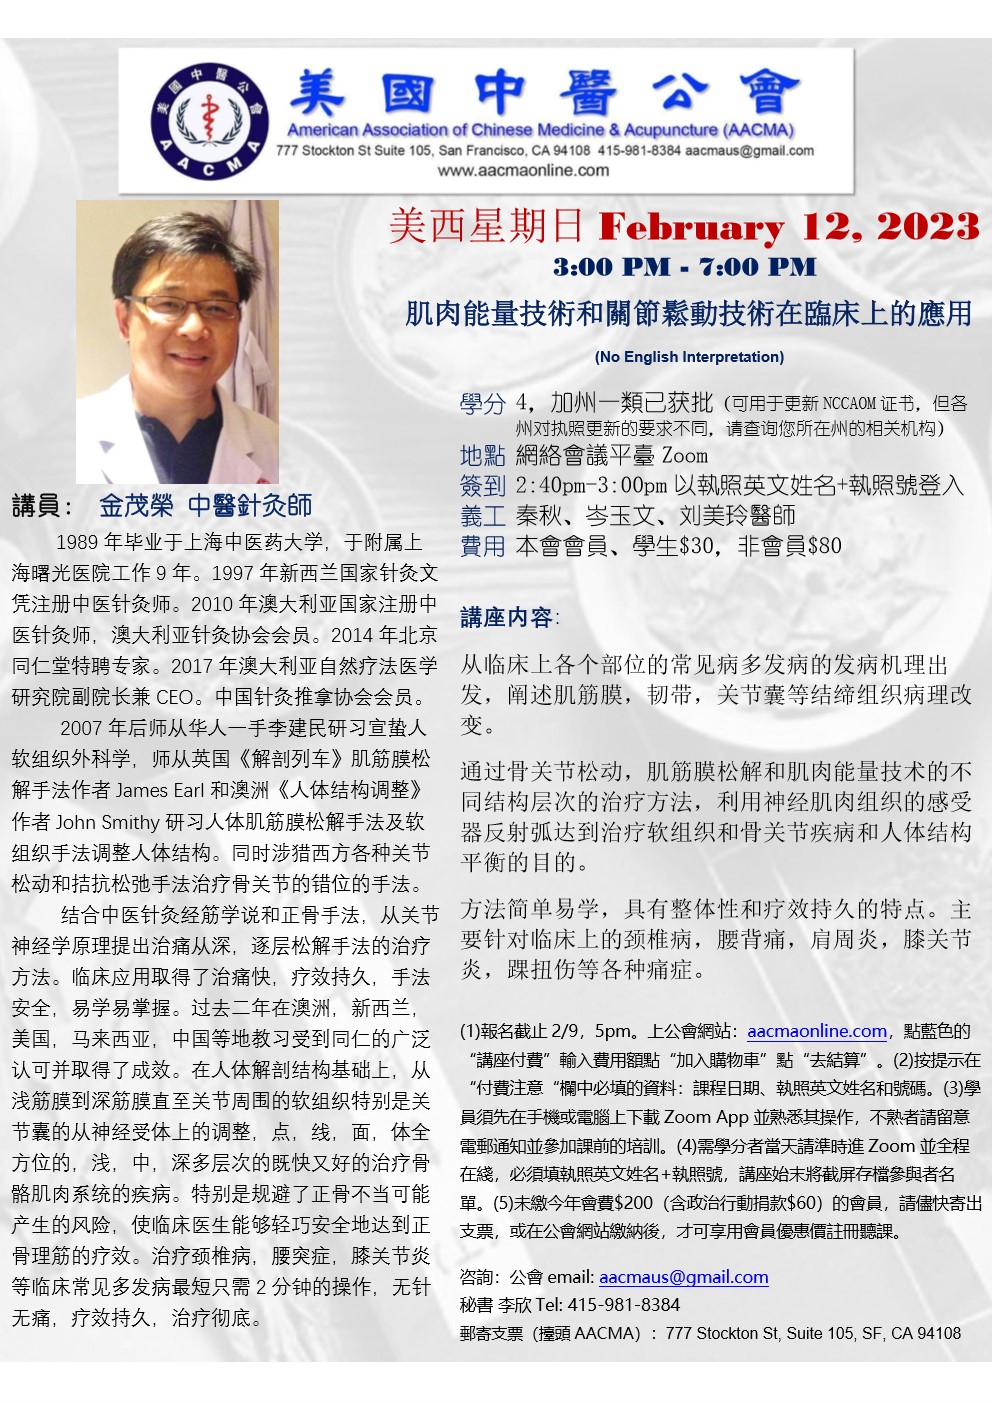 2/12/2023金茂荣医师-肌肉能量技术和关节松动技术在临床上的应用-4個